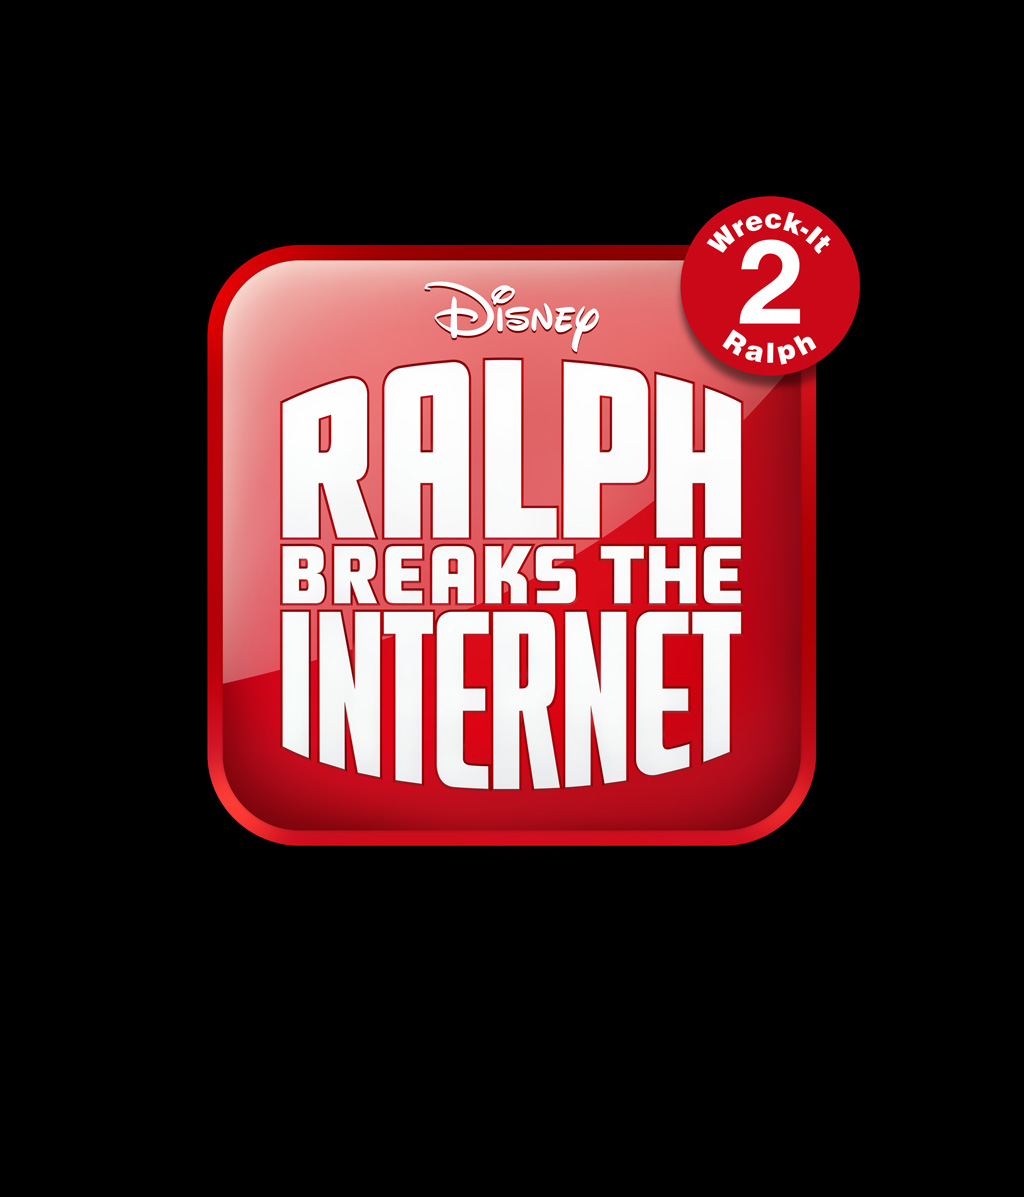 Ralph Breaks the Internet: Wreck-It Ralph 2